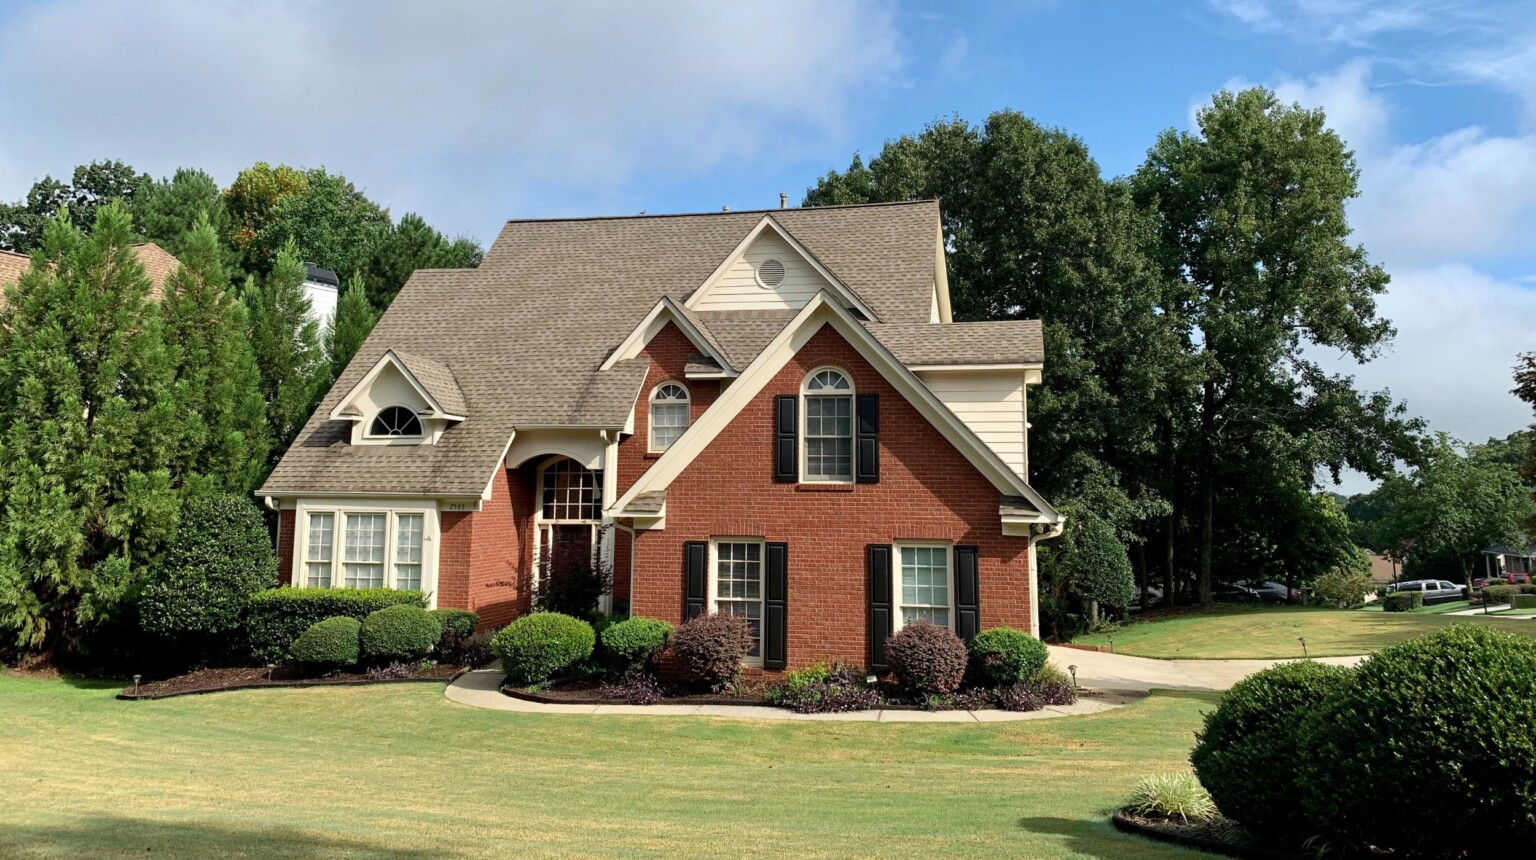 Maison unifamiliale de brique rouge sur un grand terrain verdoyant - Hypothèque inversée -Refinancement hypothécaire | Multi-Prêts Hypothèques